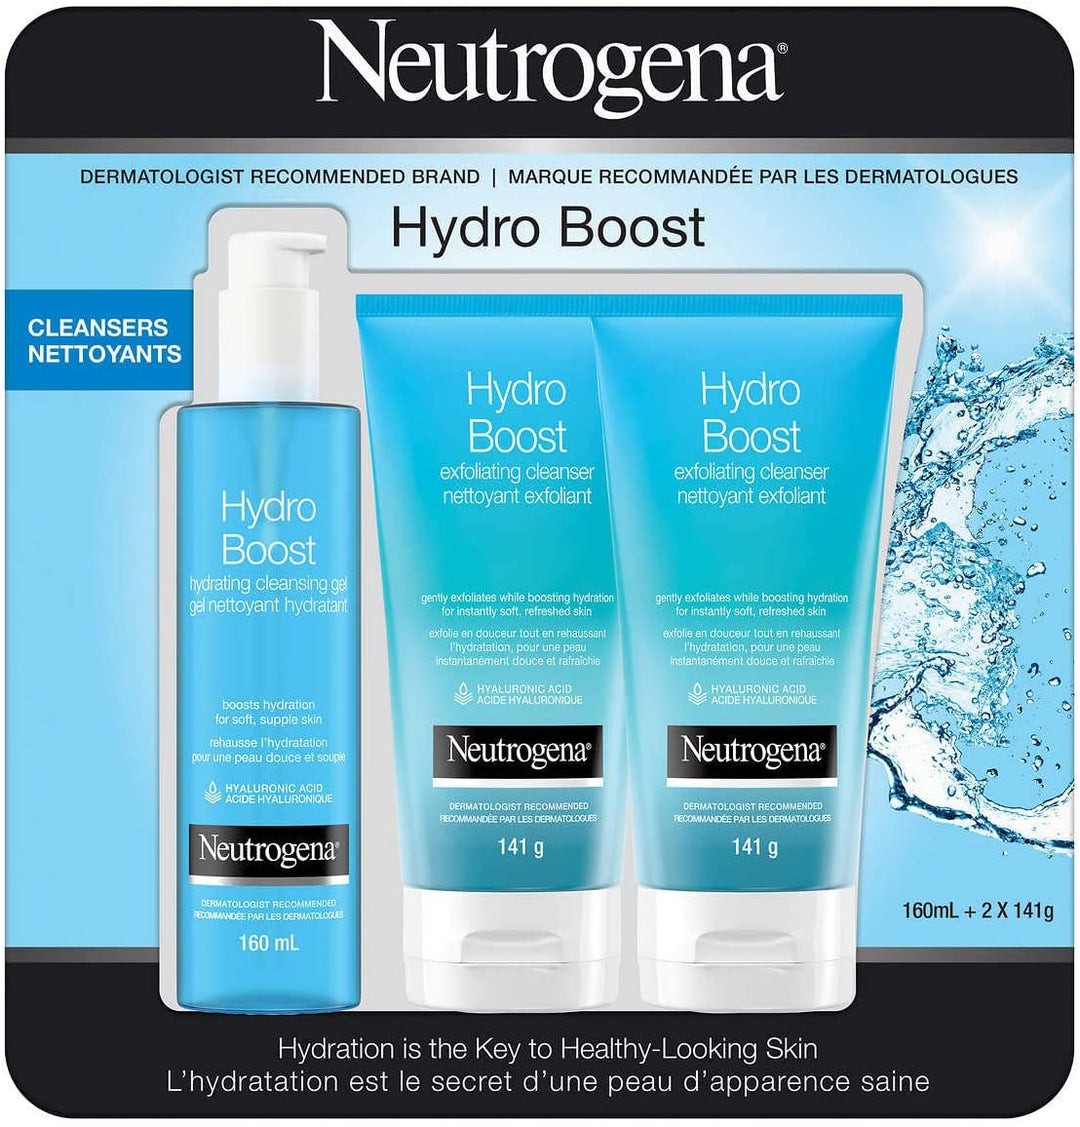 Neutrogena - Ensemble de 3 nettoyants exfoliants pour le visage, Hydro Boost